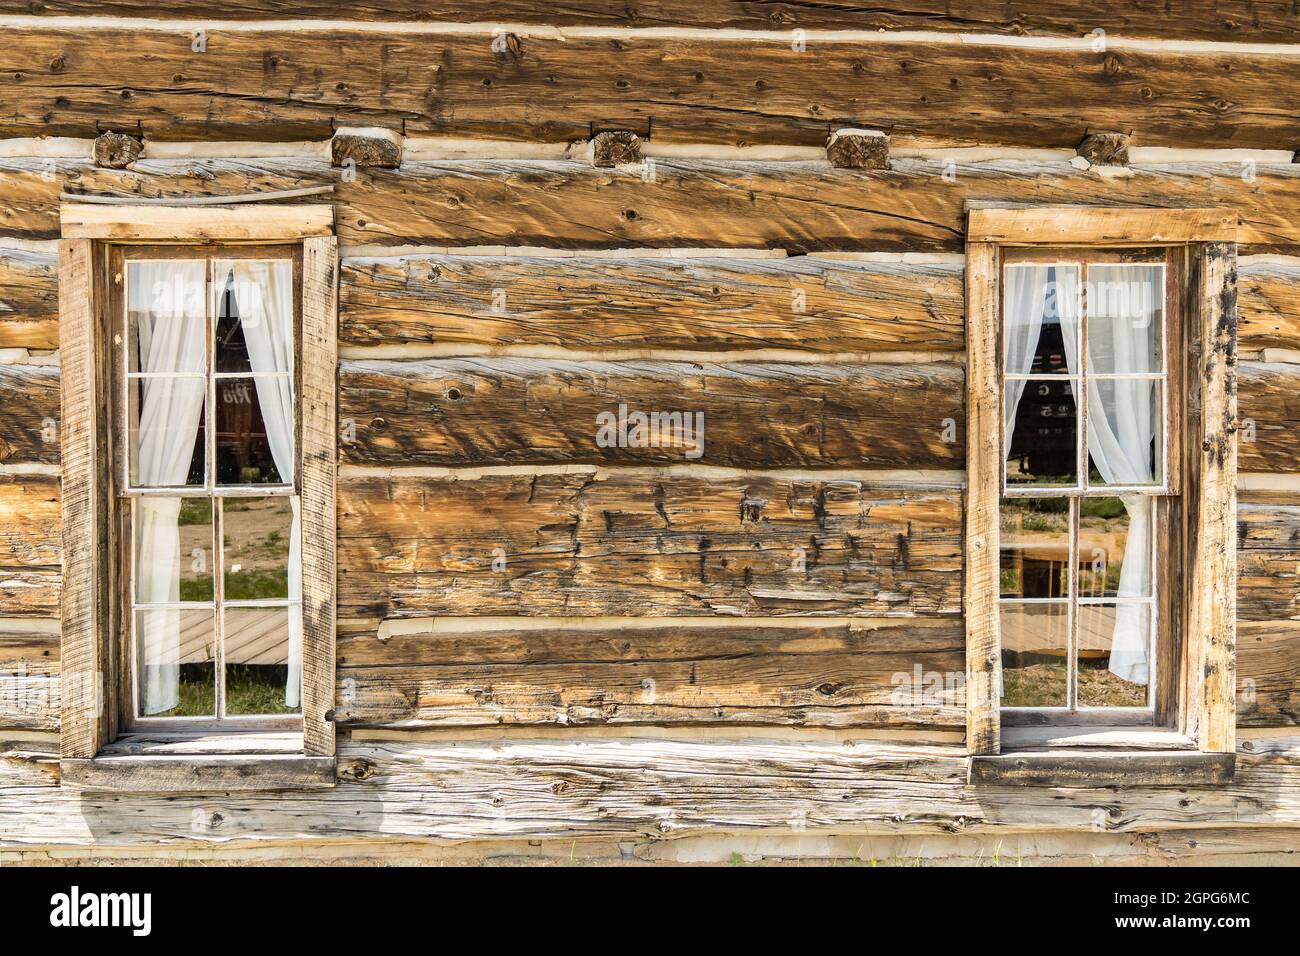 Vieilles fenêtres en bois avec un rideau dans une cabane rustique en bois Banque D'Images